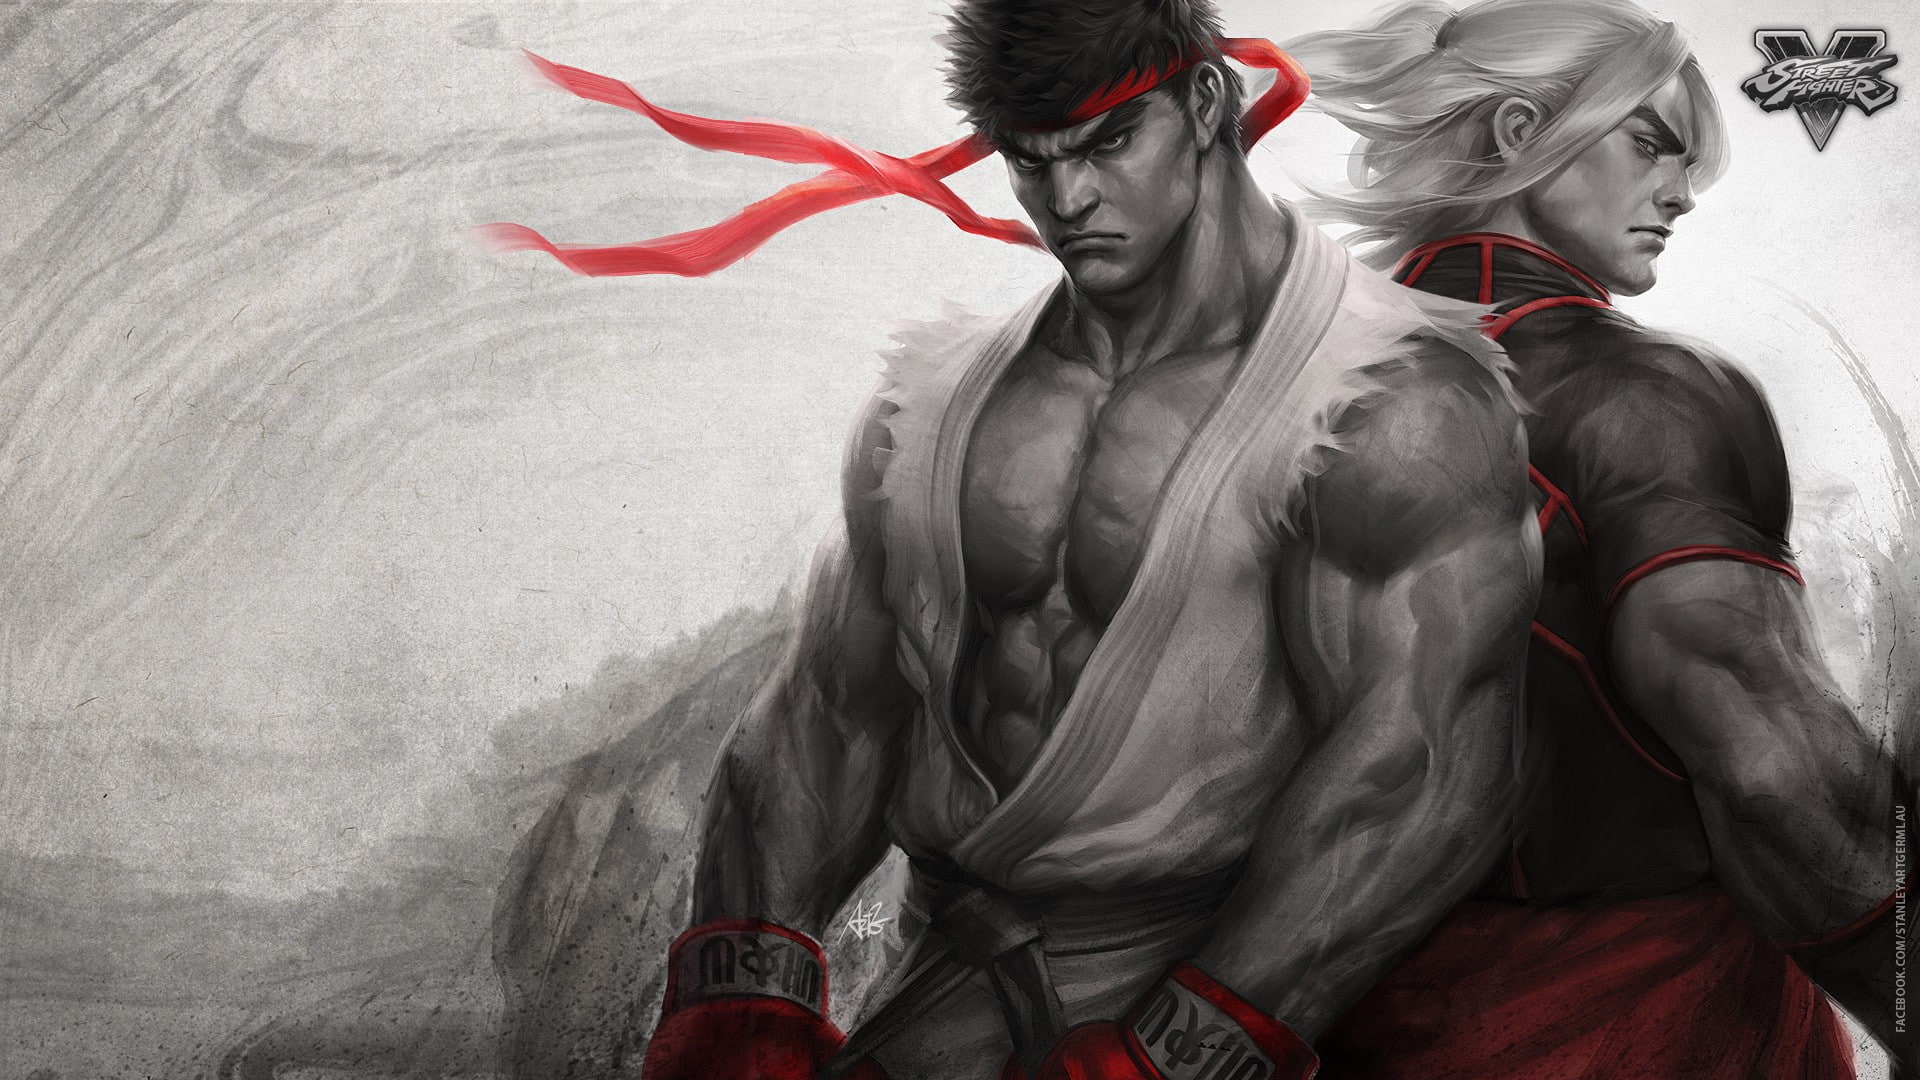 artwork, Ken (Street Fighter), Ryu (Street Fighter), Street Fighter V